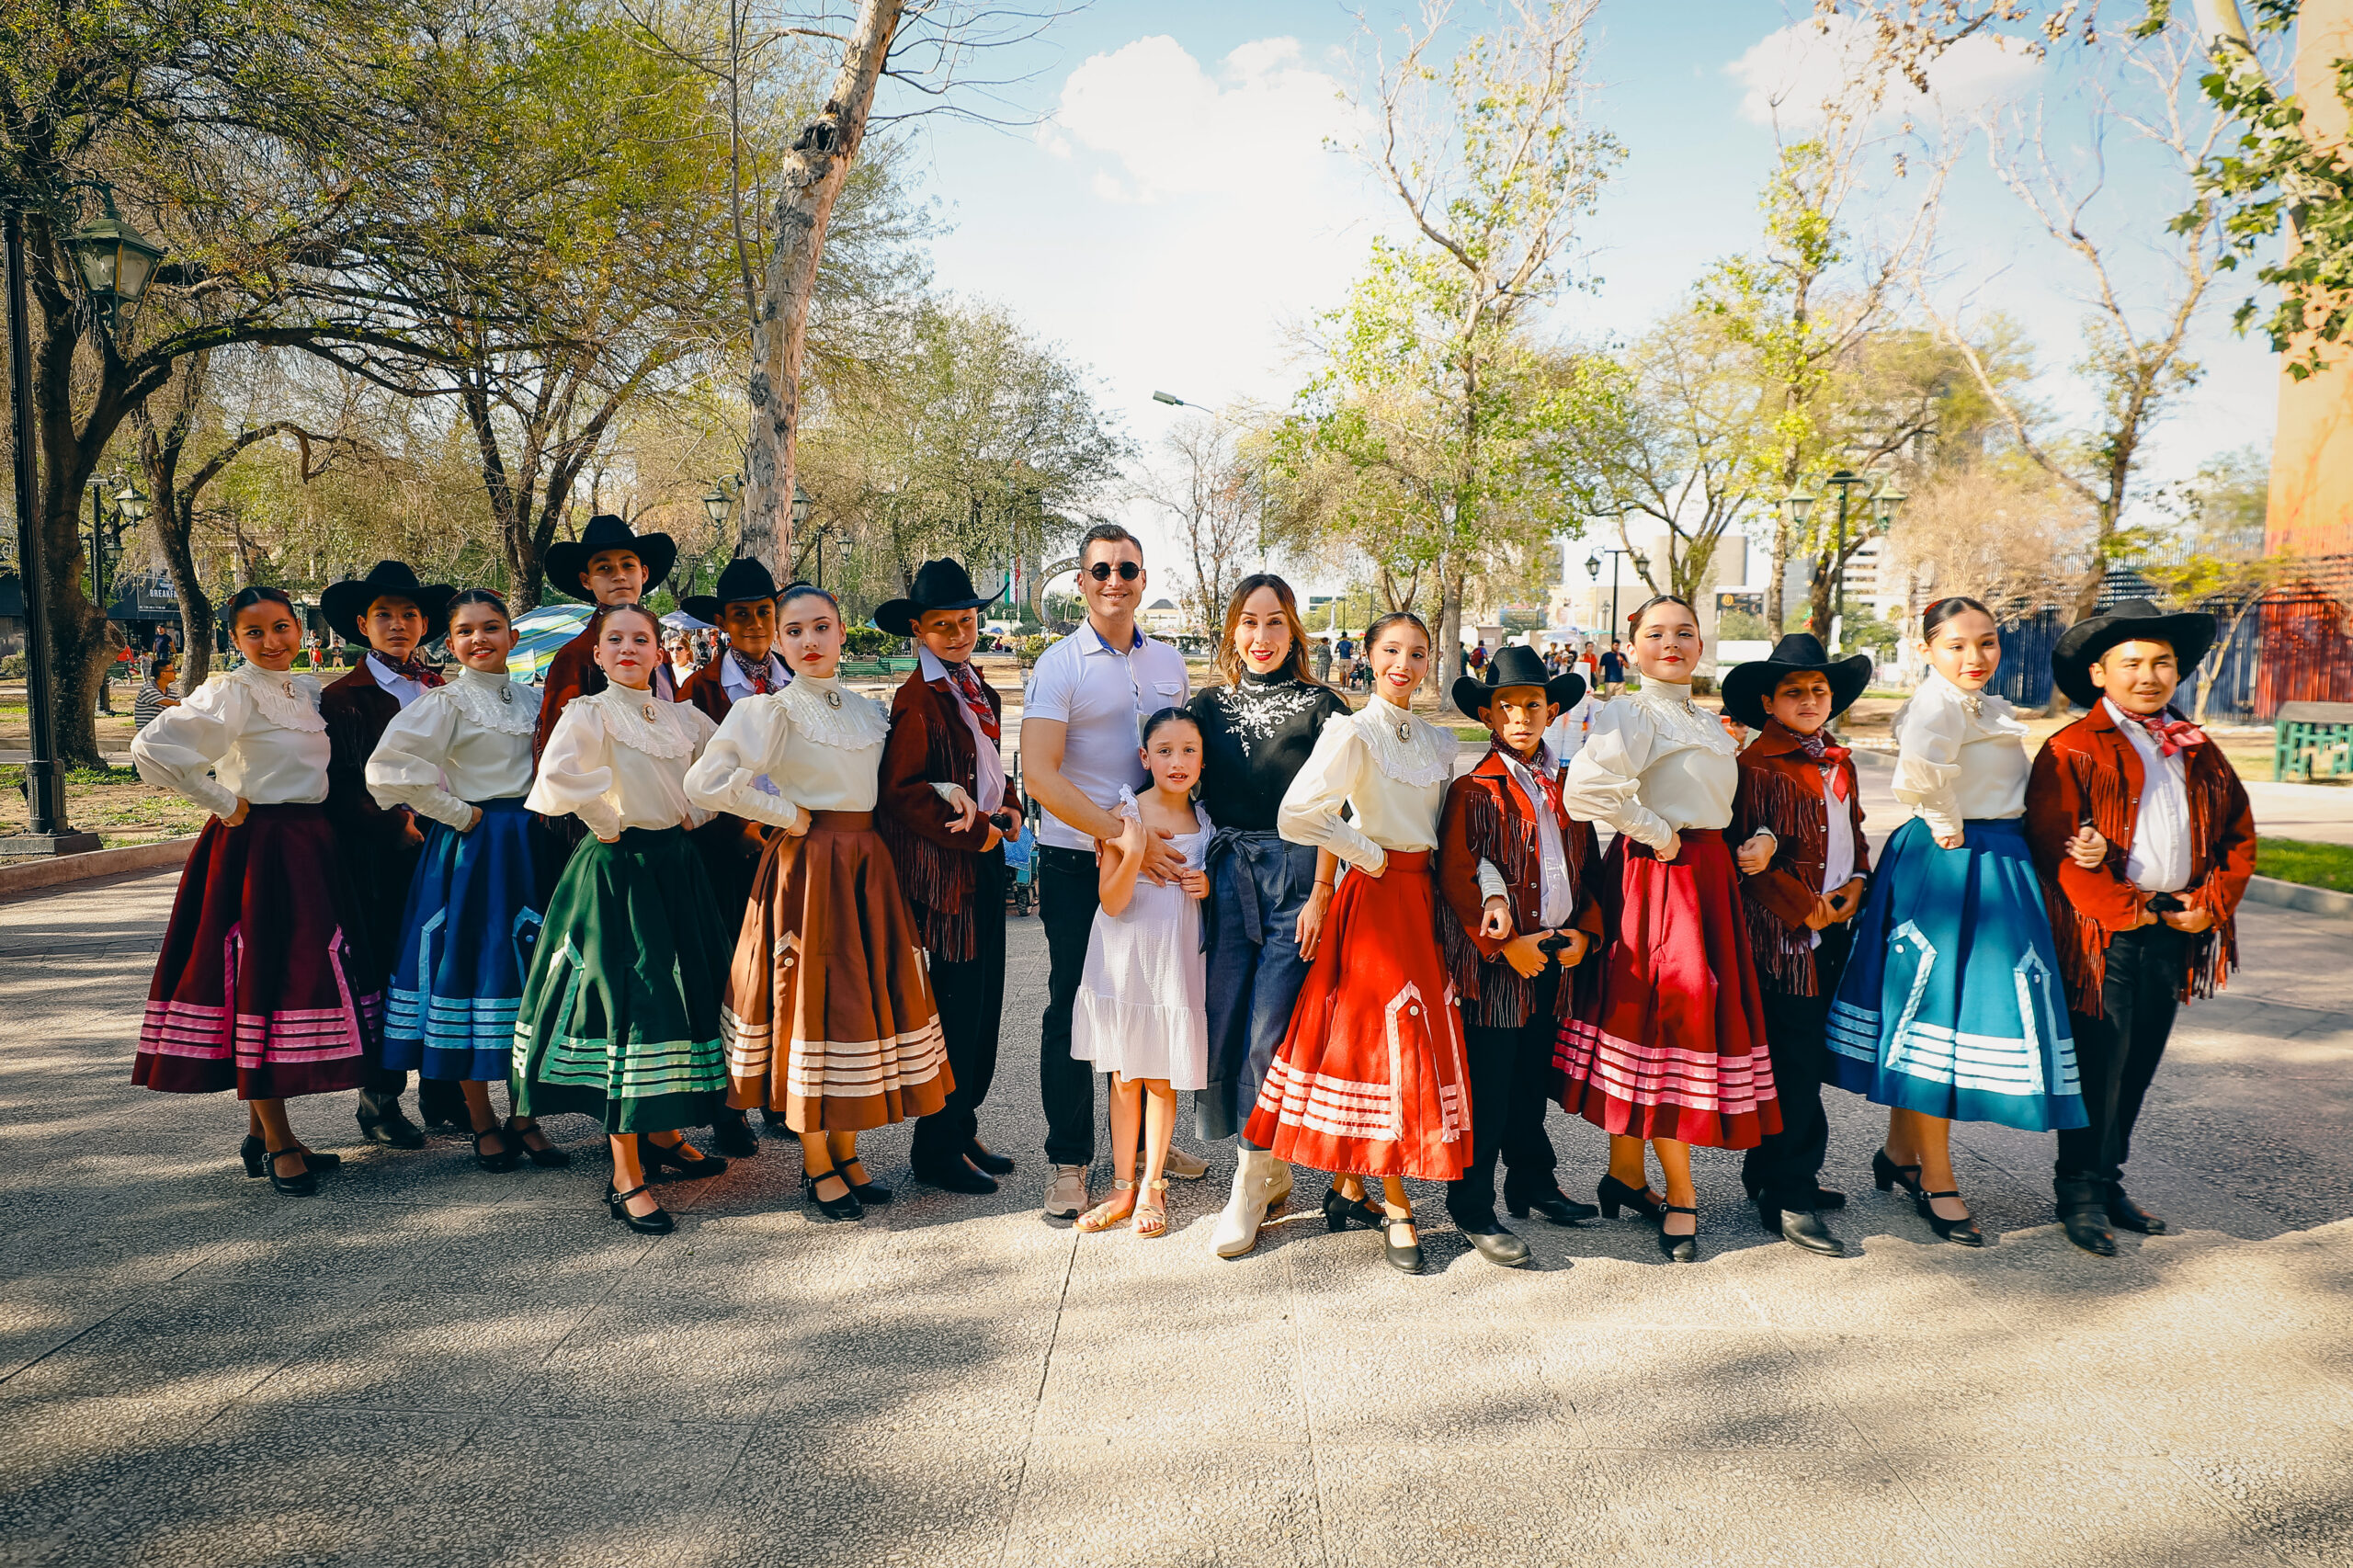 Participan mil personas en baile folklórico masiva por el aniversario de Monterrey